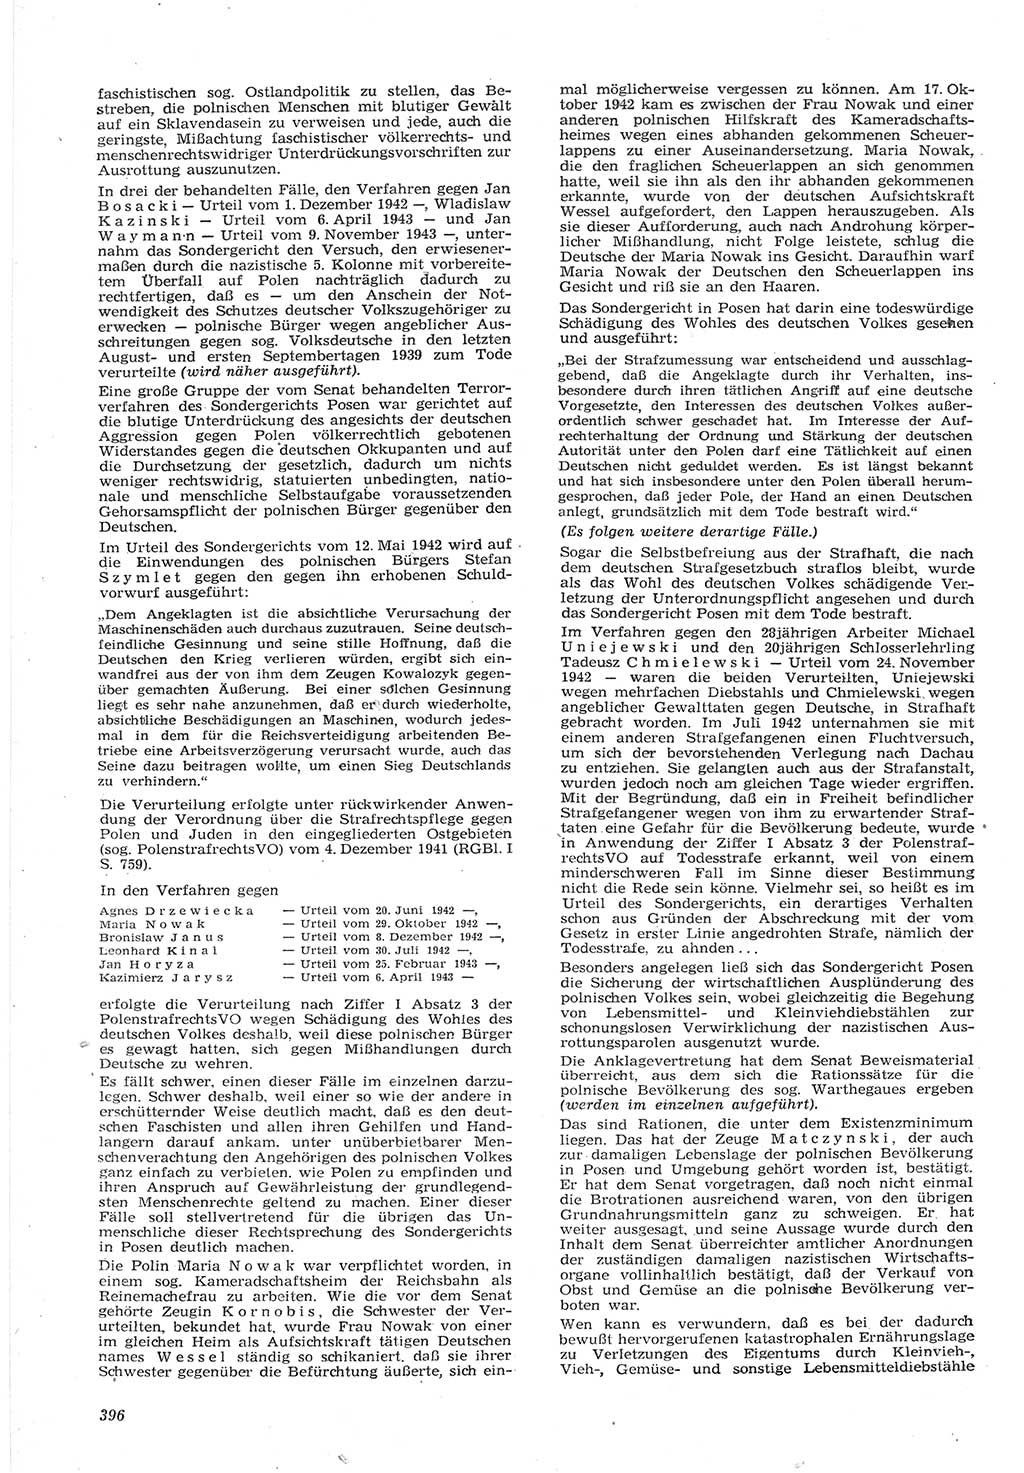 Neue Justiz (NJ), Zeitschrift für Recht und Rechtswissenschaft [Deutsche Demokratische Republik (DDR)], 15. Jahrgang 1961, Seite 396 (NJ DDR 1961, S. 396)